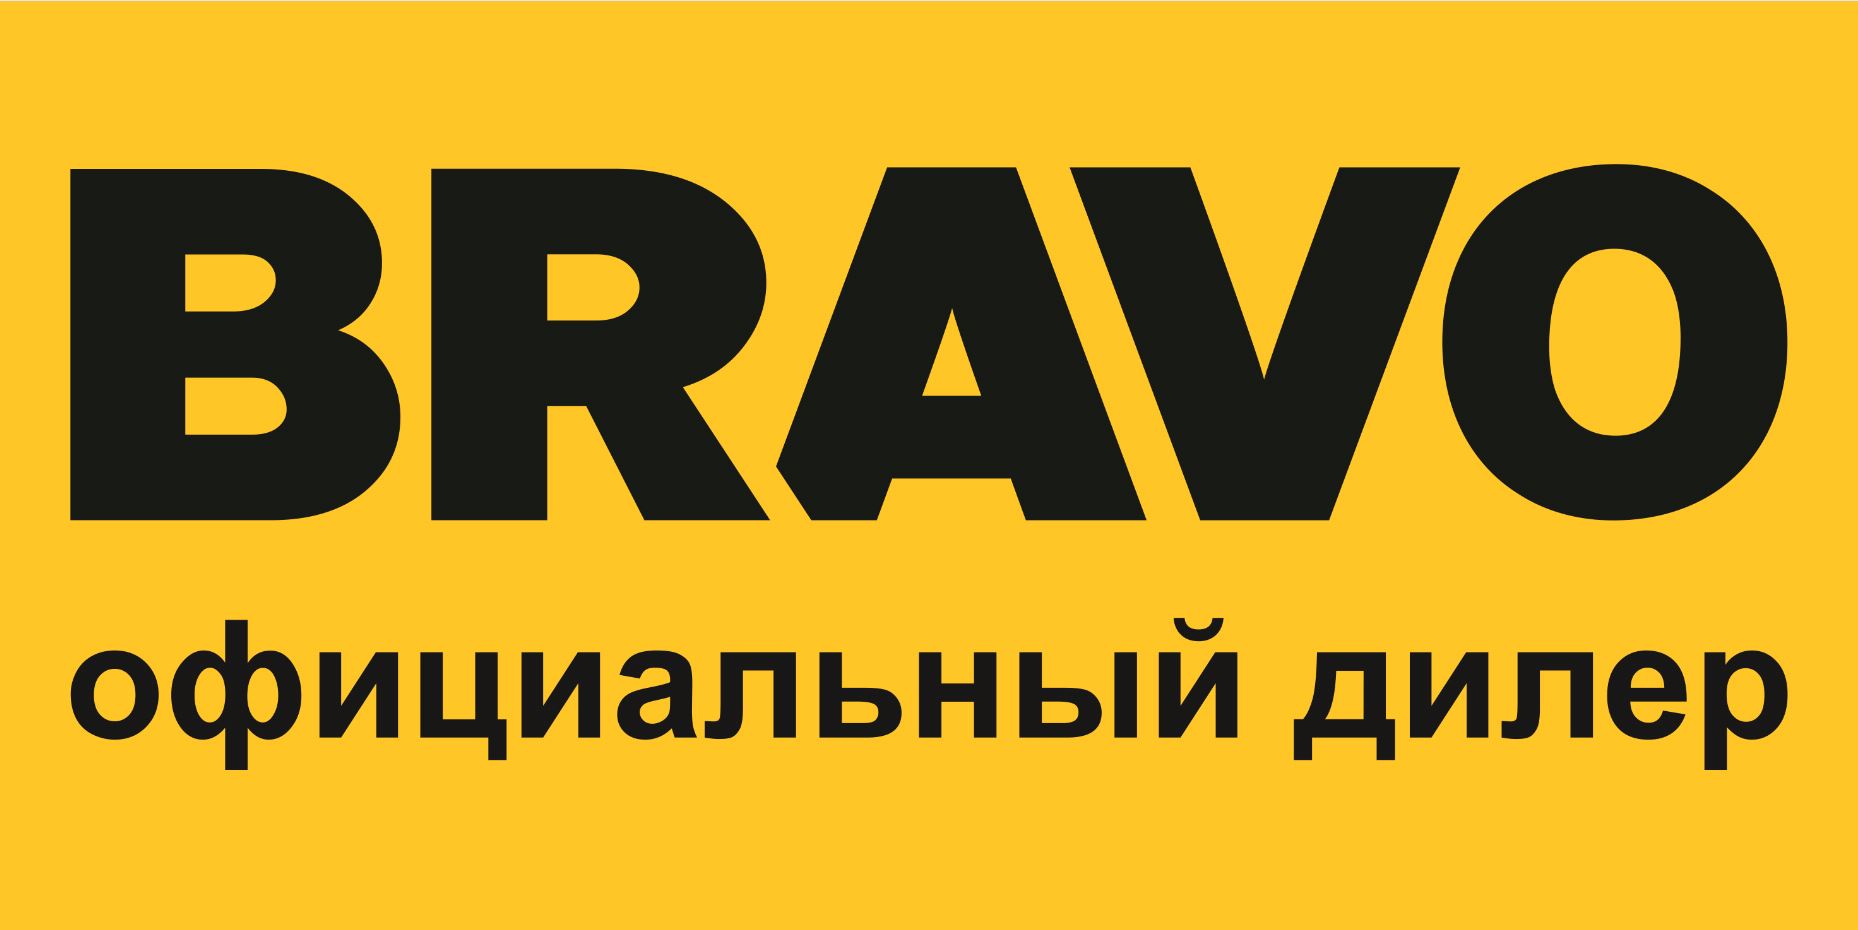 Логотип Браво Официальный дилер